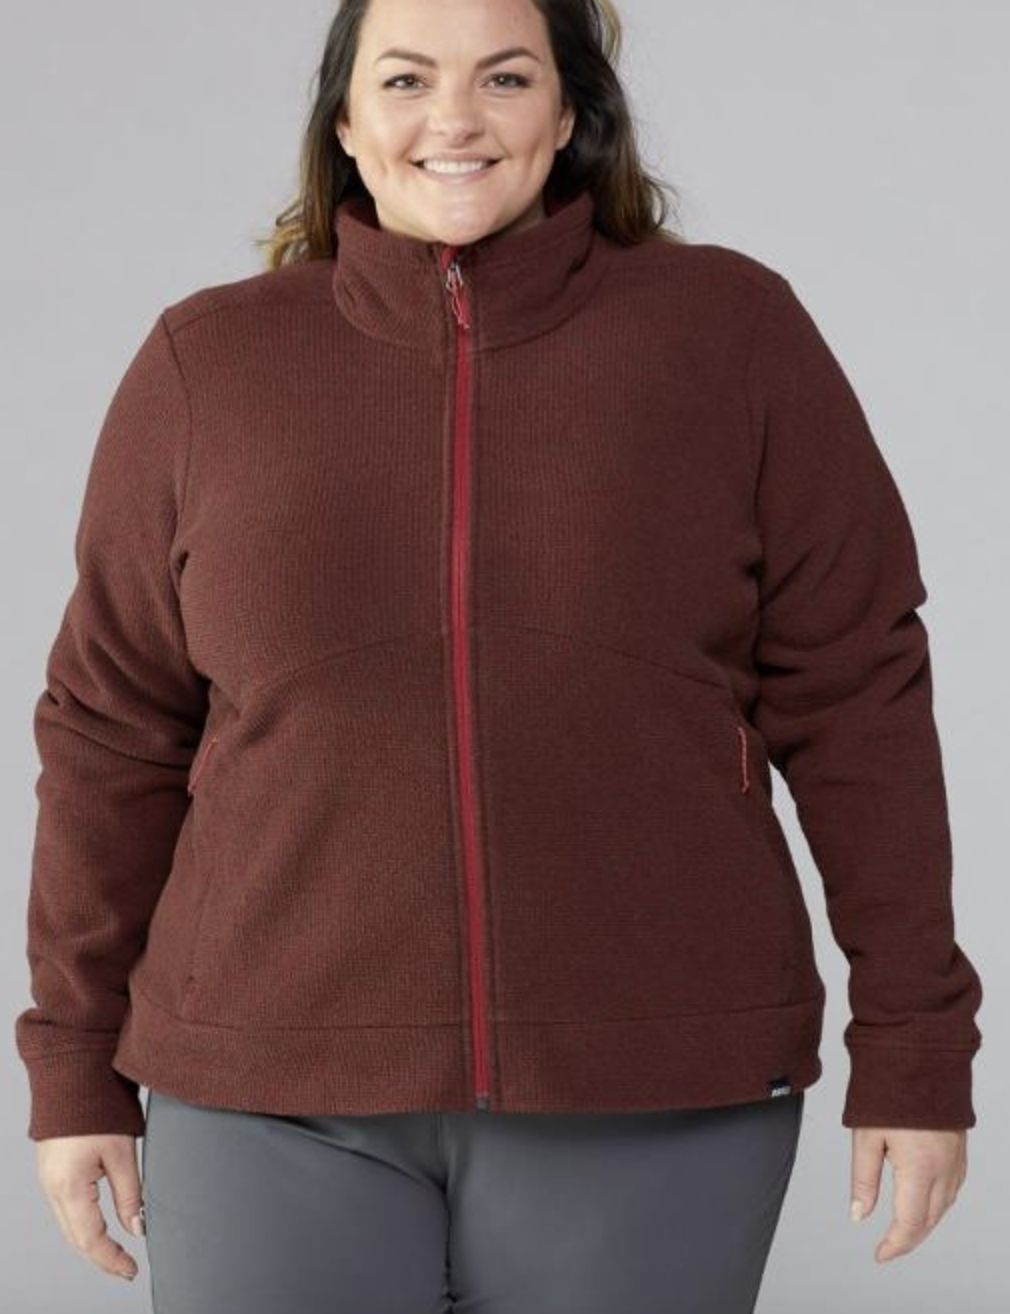 model in dark red zip-up fleece